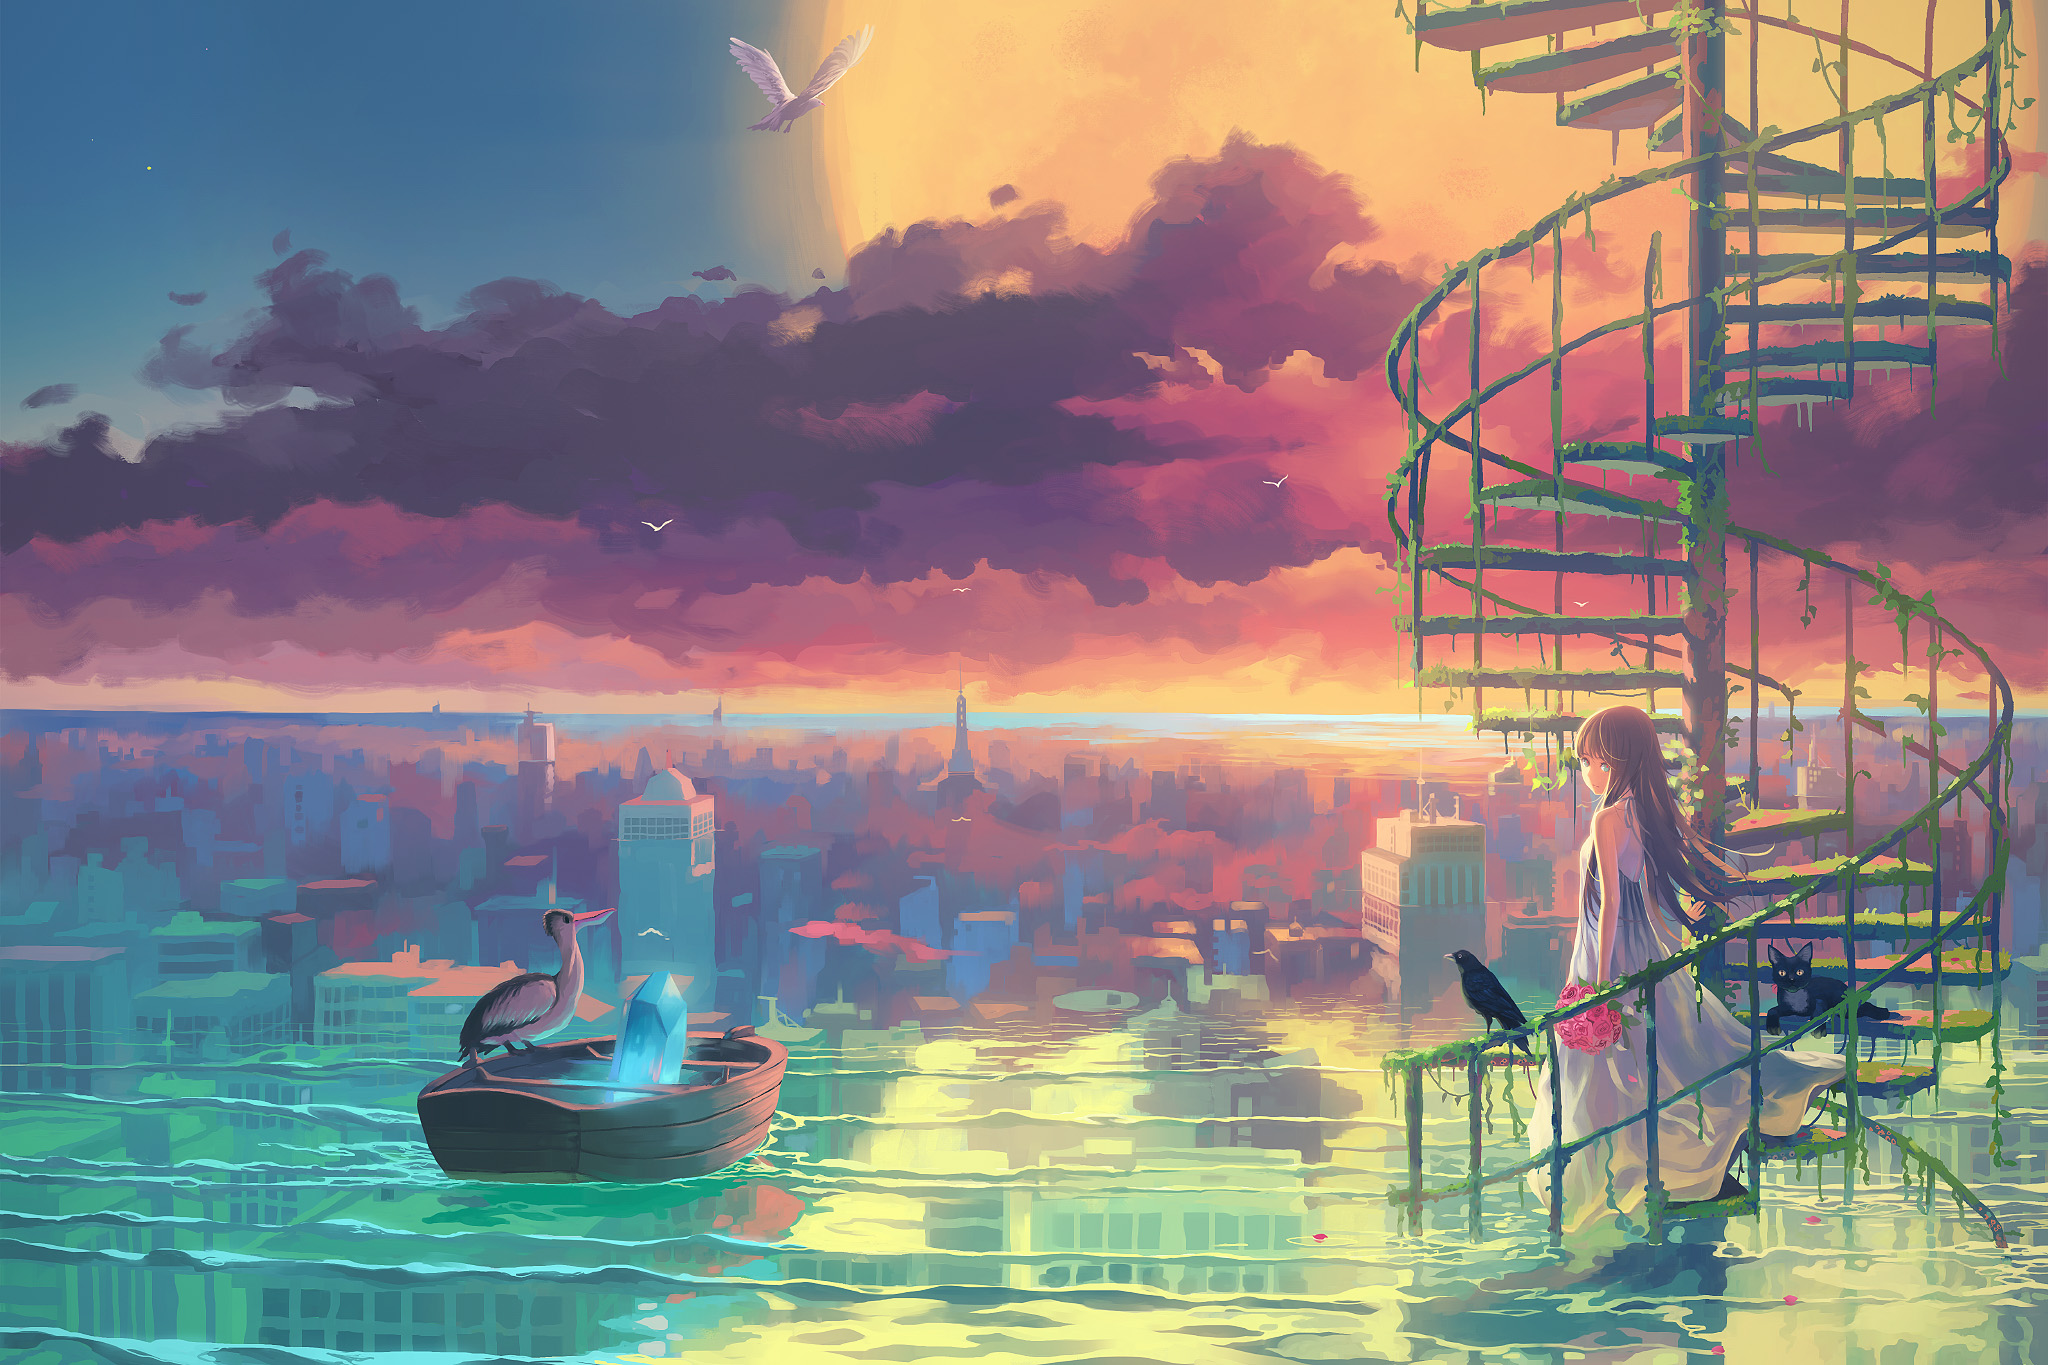 Anime Original HD Wallpaper: Từng giây phút trôi qua là những khoảnh khắc đầy màu sắc và hào hứng với thế giới anime đặc sắc. Hãy để không gian sống thêm phần sinh động với những hình nền anime chất lượng cao, rực rỡ sắc màu và độc đáo tạo nên không khí hứng khởi cùng sự ban tặng độc đáo này.